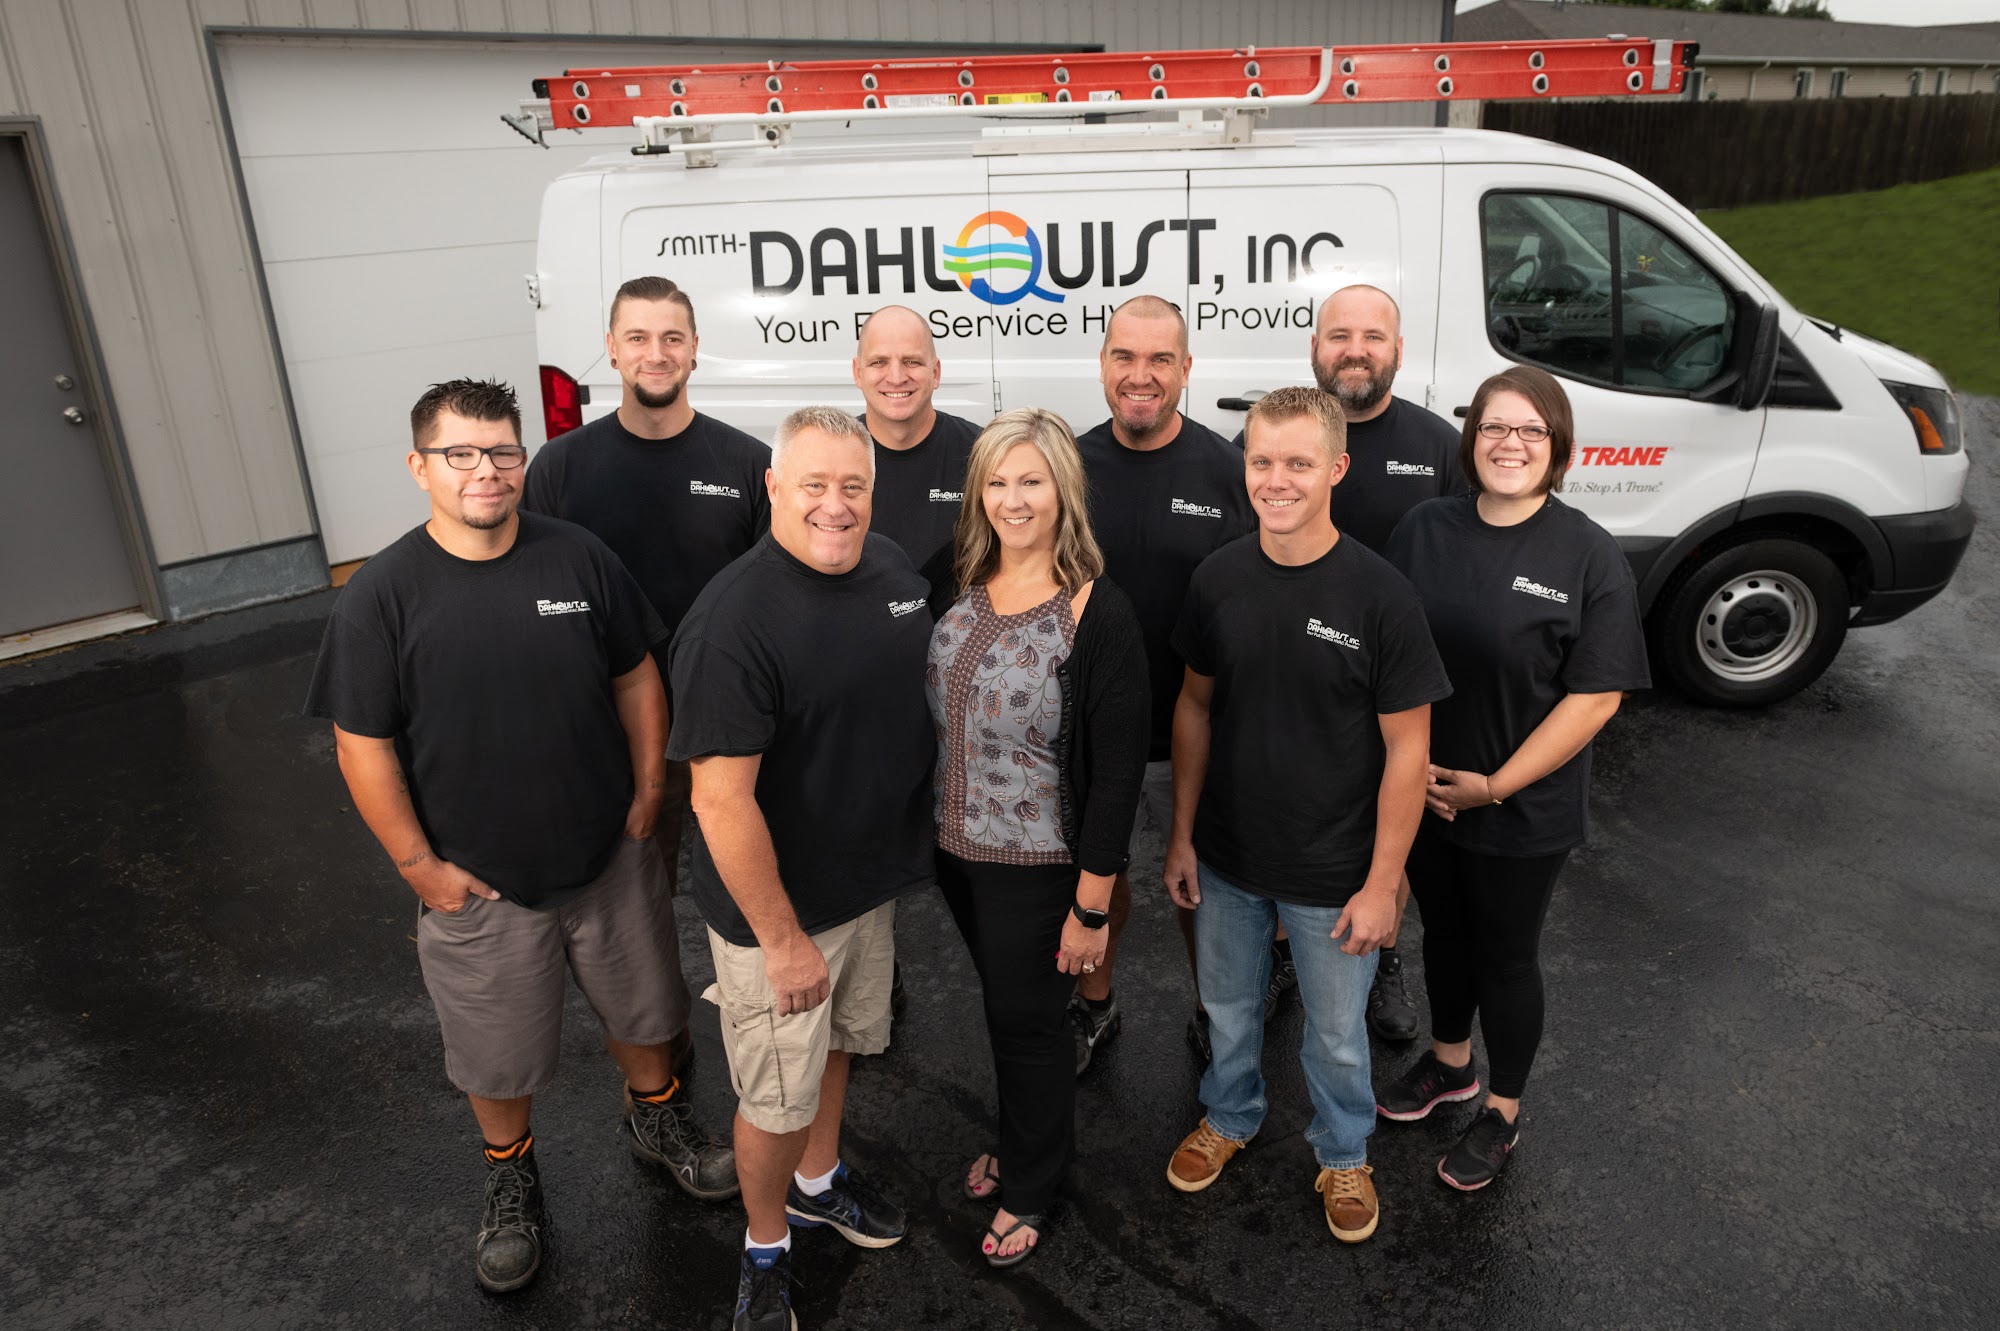 Smith-Dahlquist, Inc.